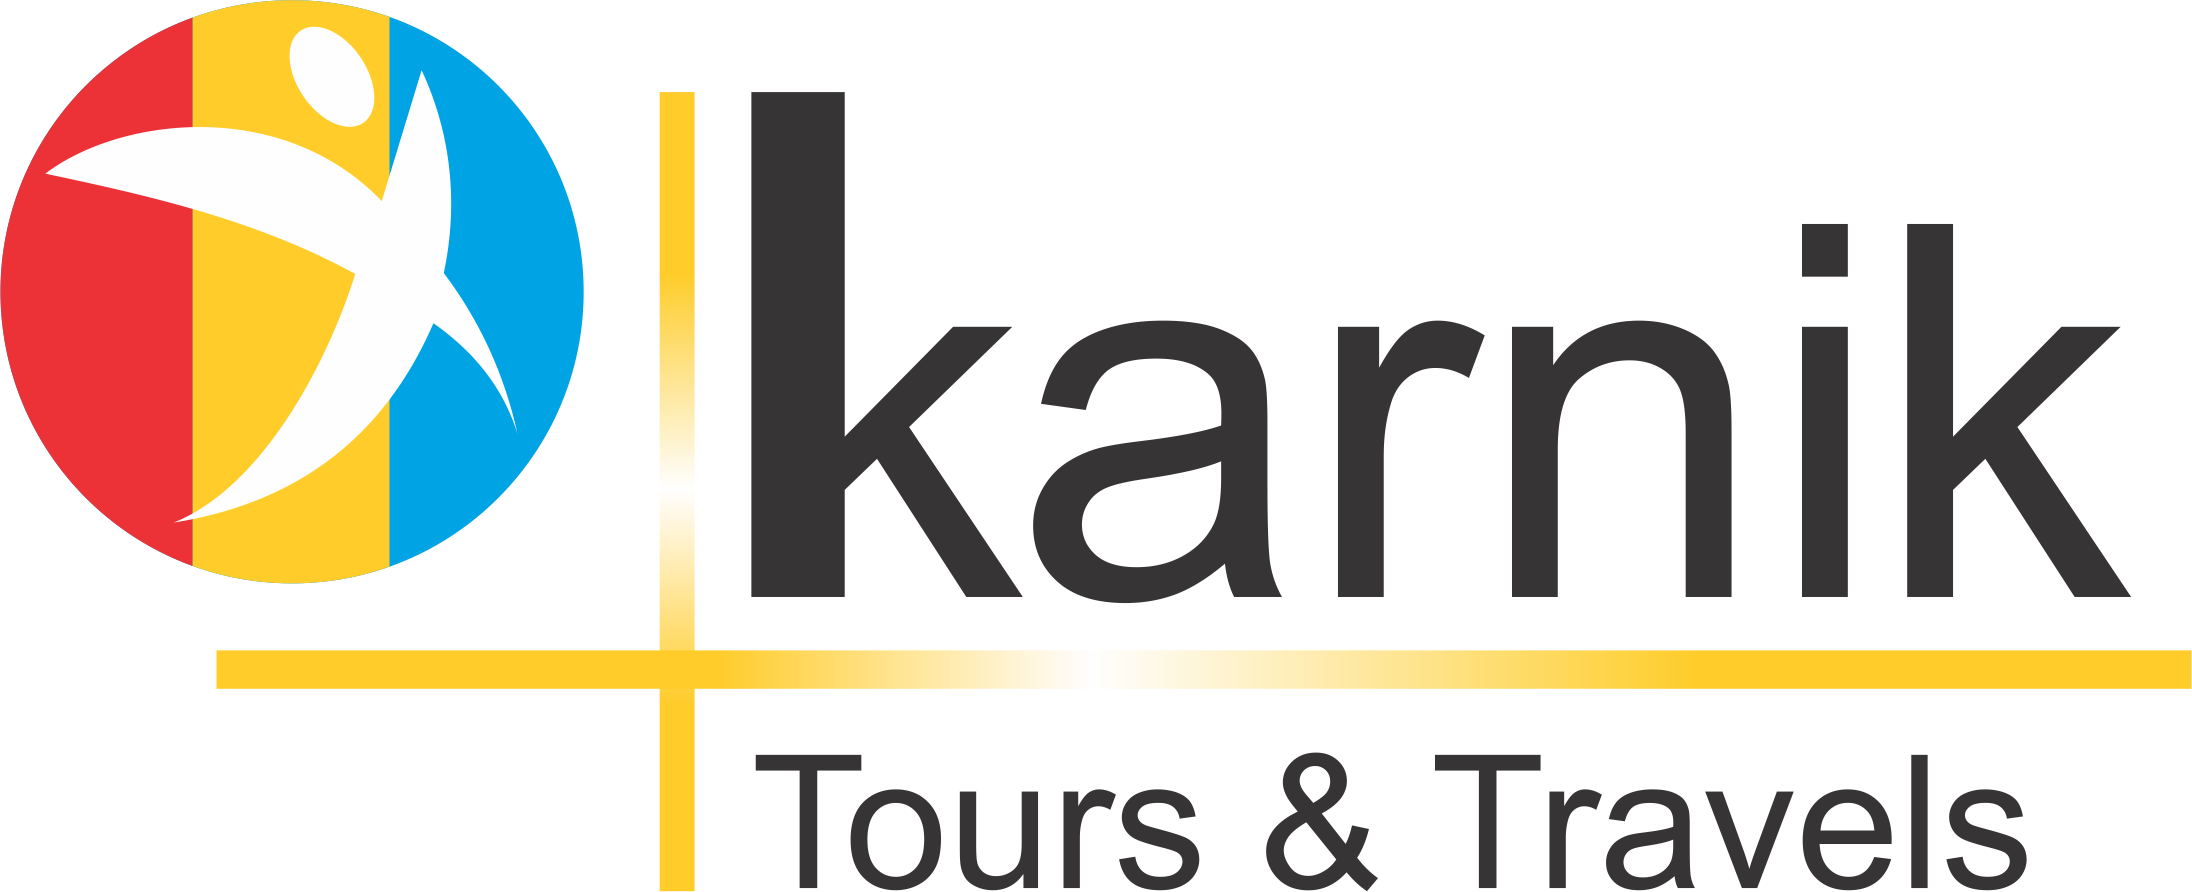 Karnik Tours & Travels